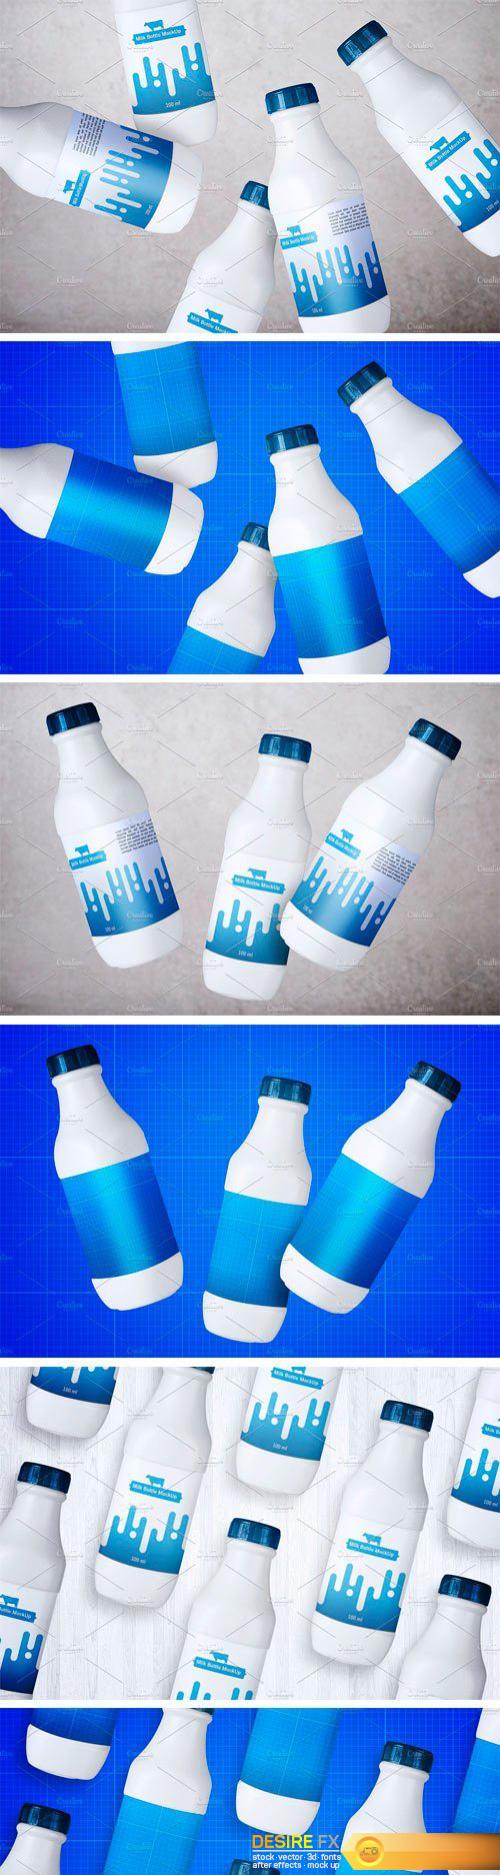 CM - Milk Bottle V.1 2392196